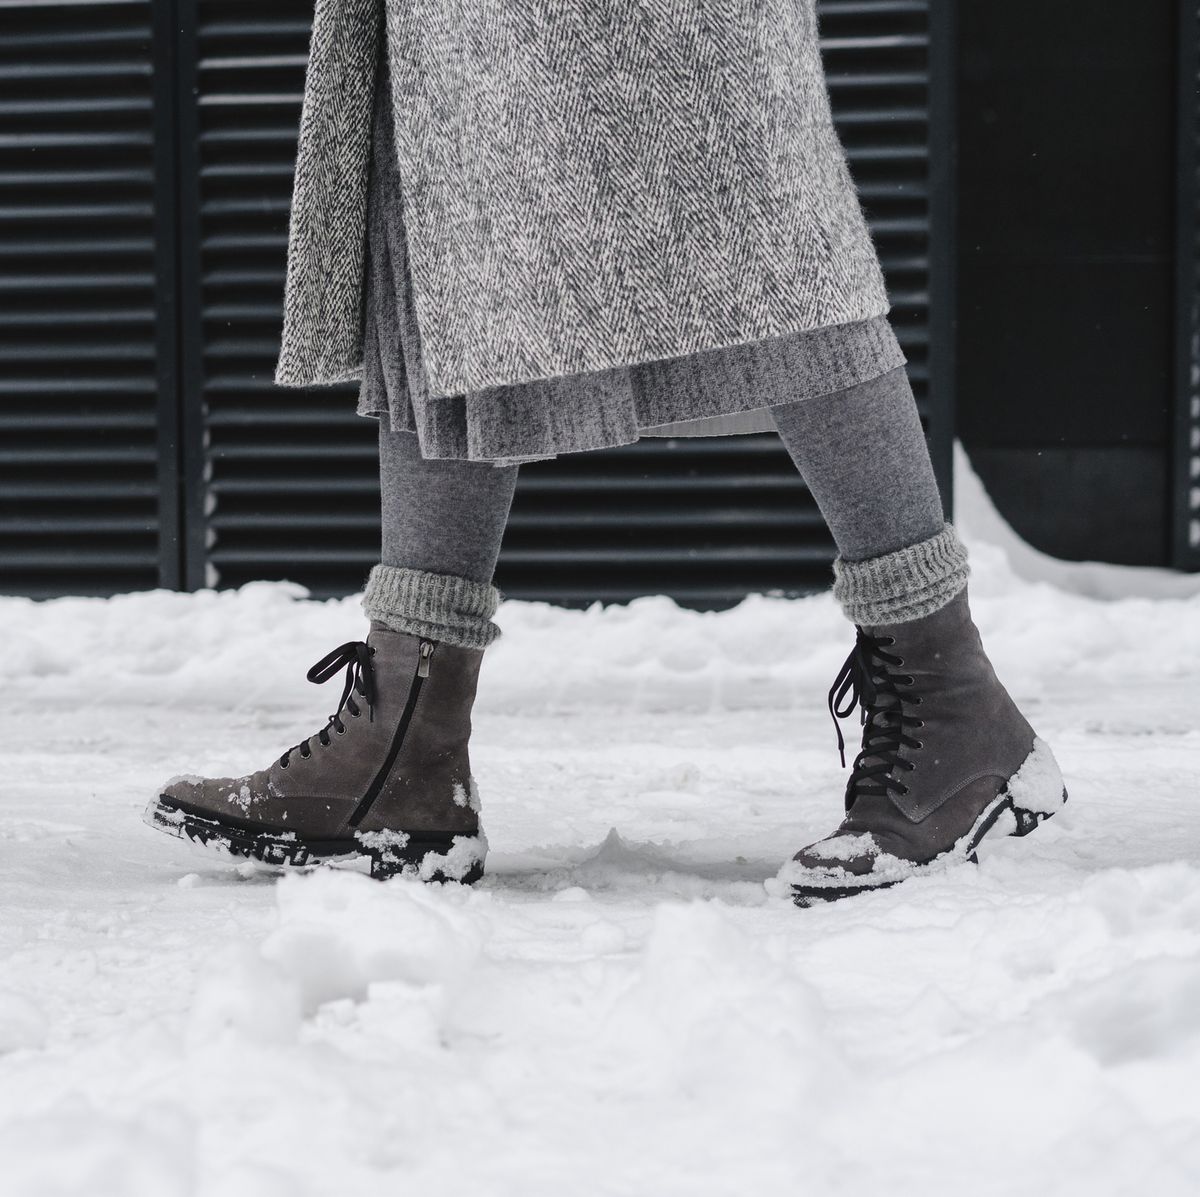 Best Winter Thermal & Fleece-Lined Leggings to Stay Warm in 2023